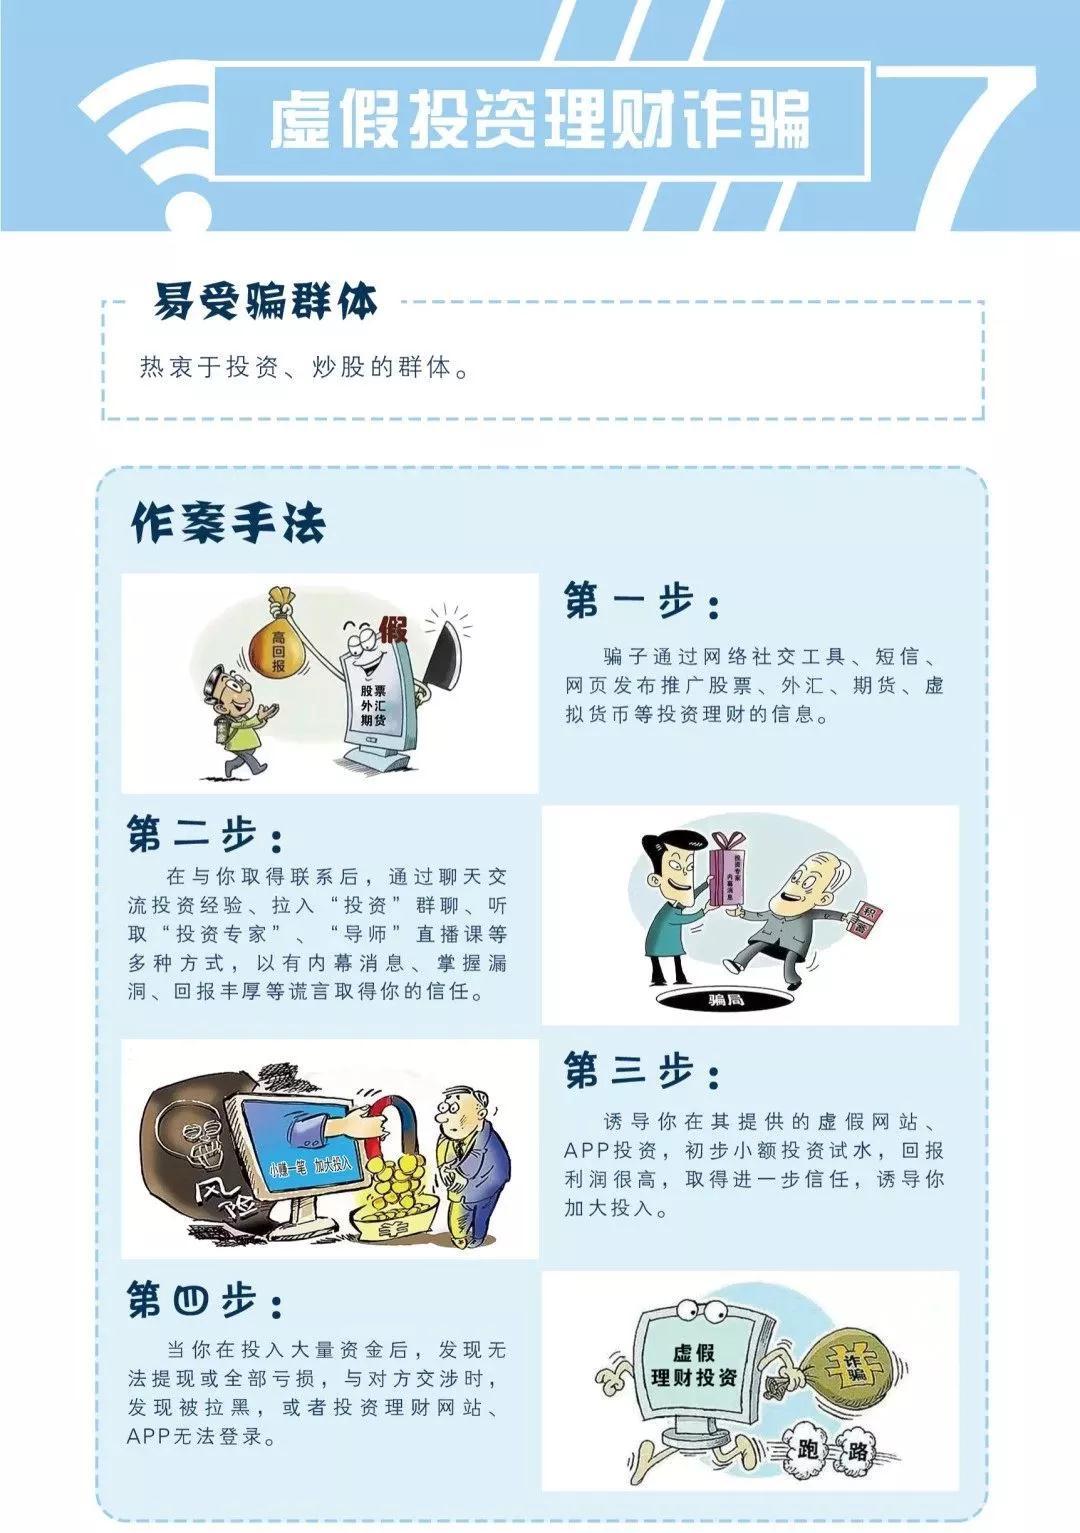 一名芜湖市民因信任“导师”推荐“虚拟货币炒作”，被骗超200万